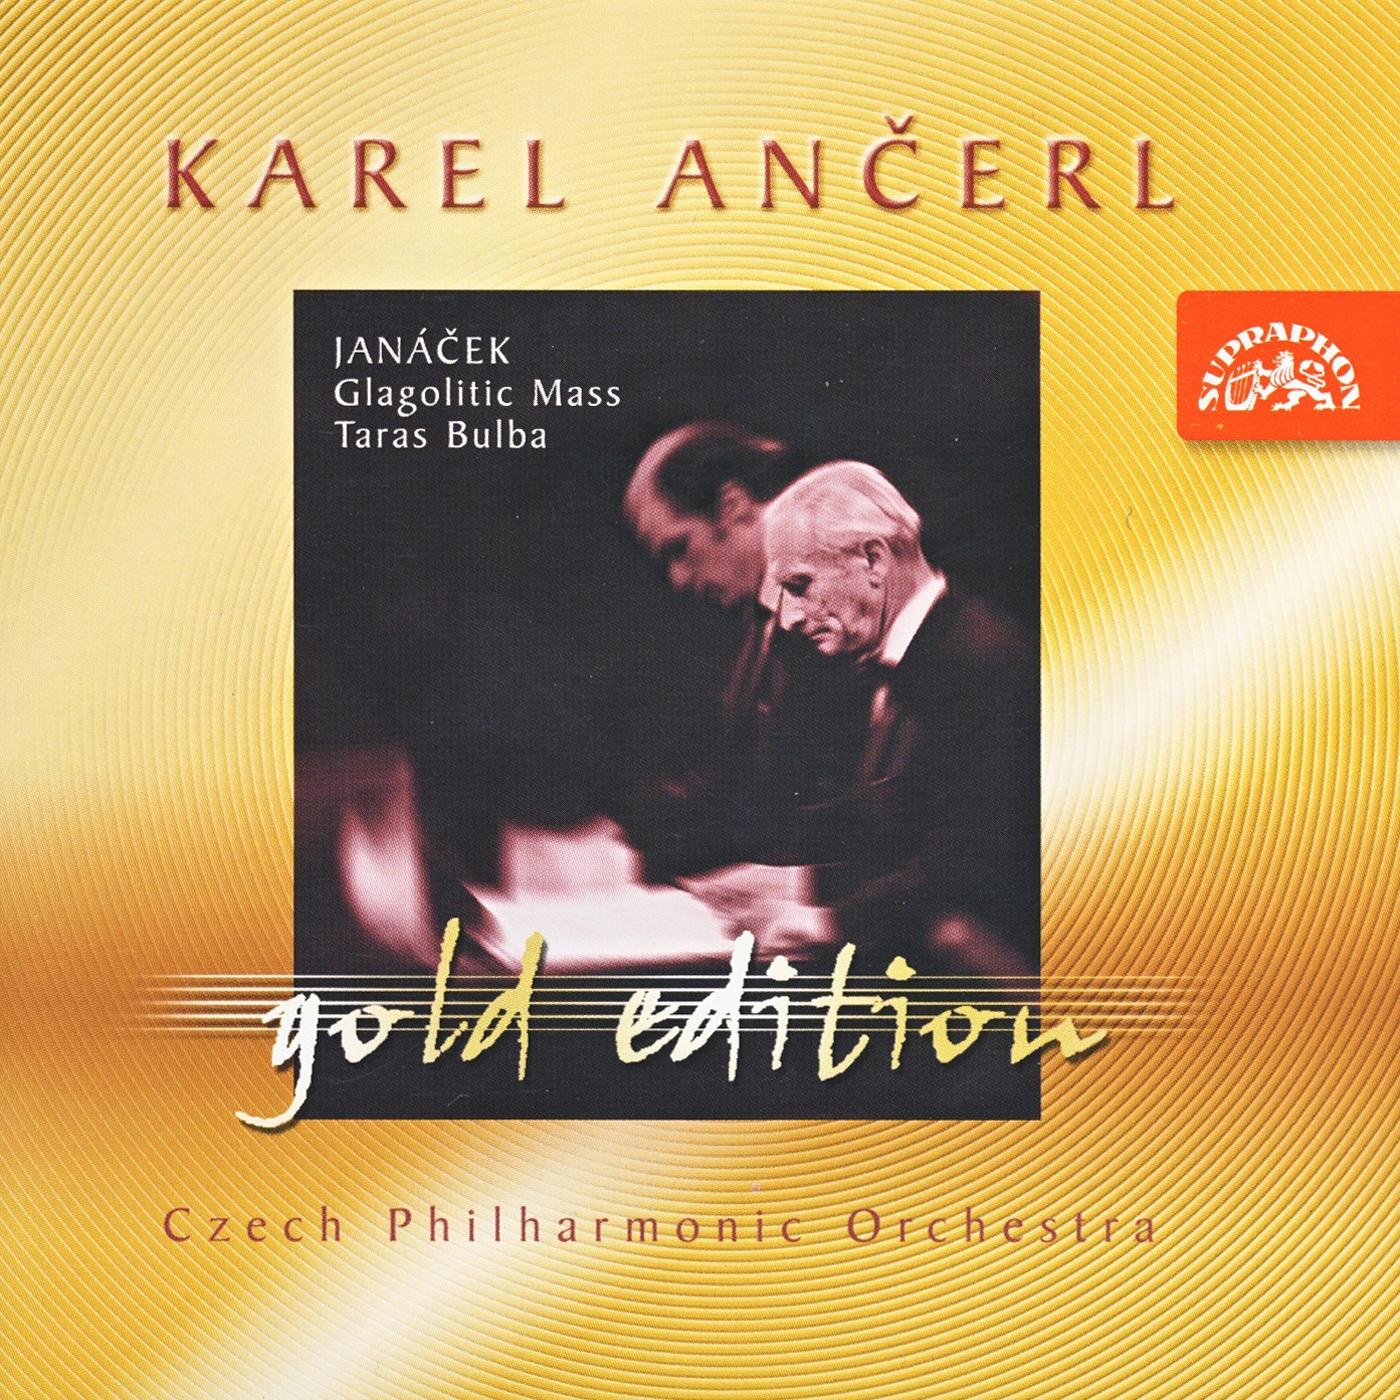 CD Shop - JANACEK, L. KAREL ANCERL GOLD EDIT.7